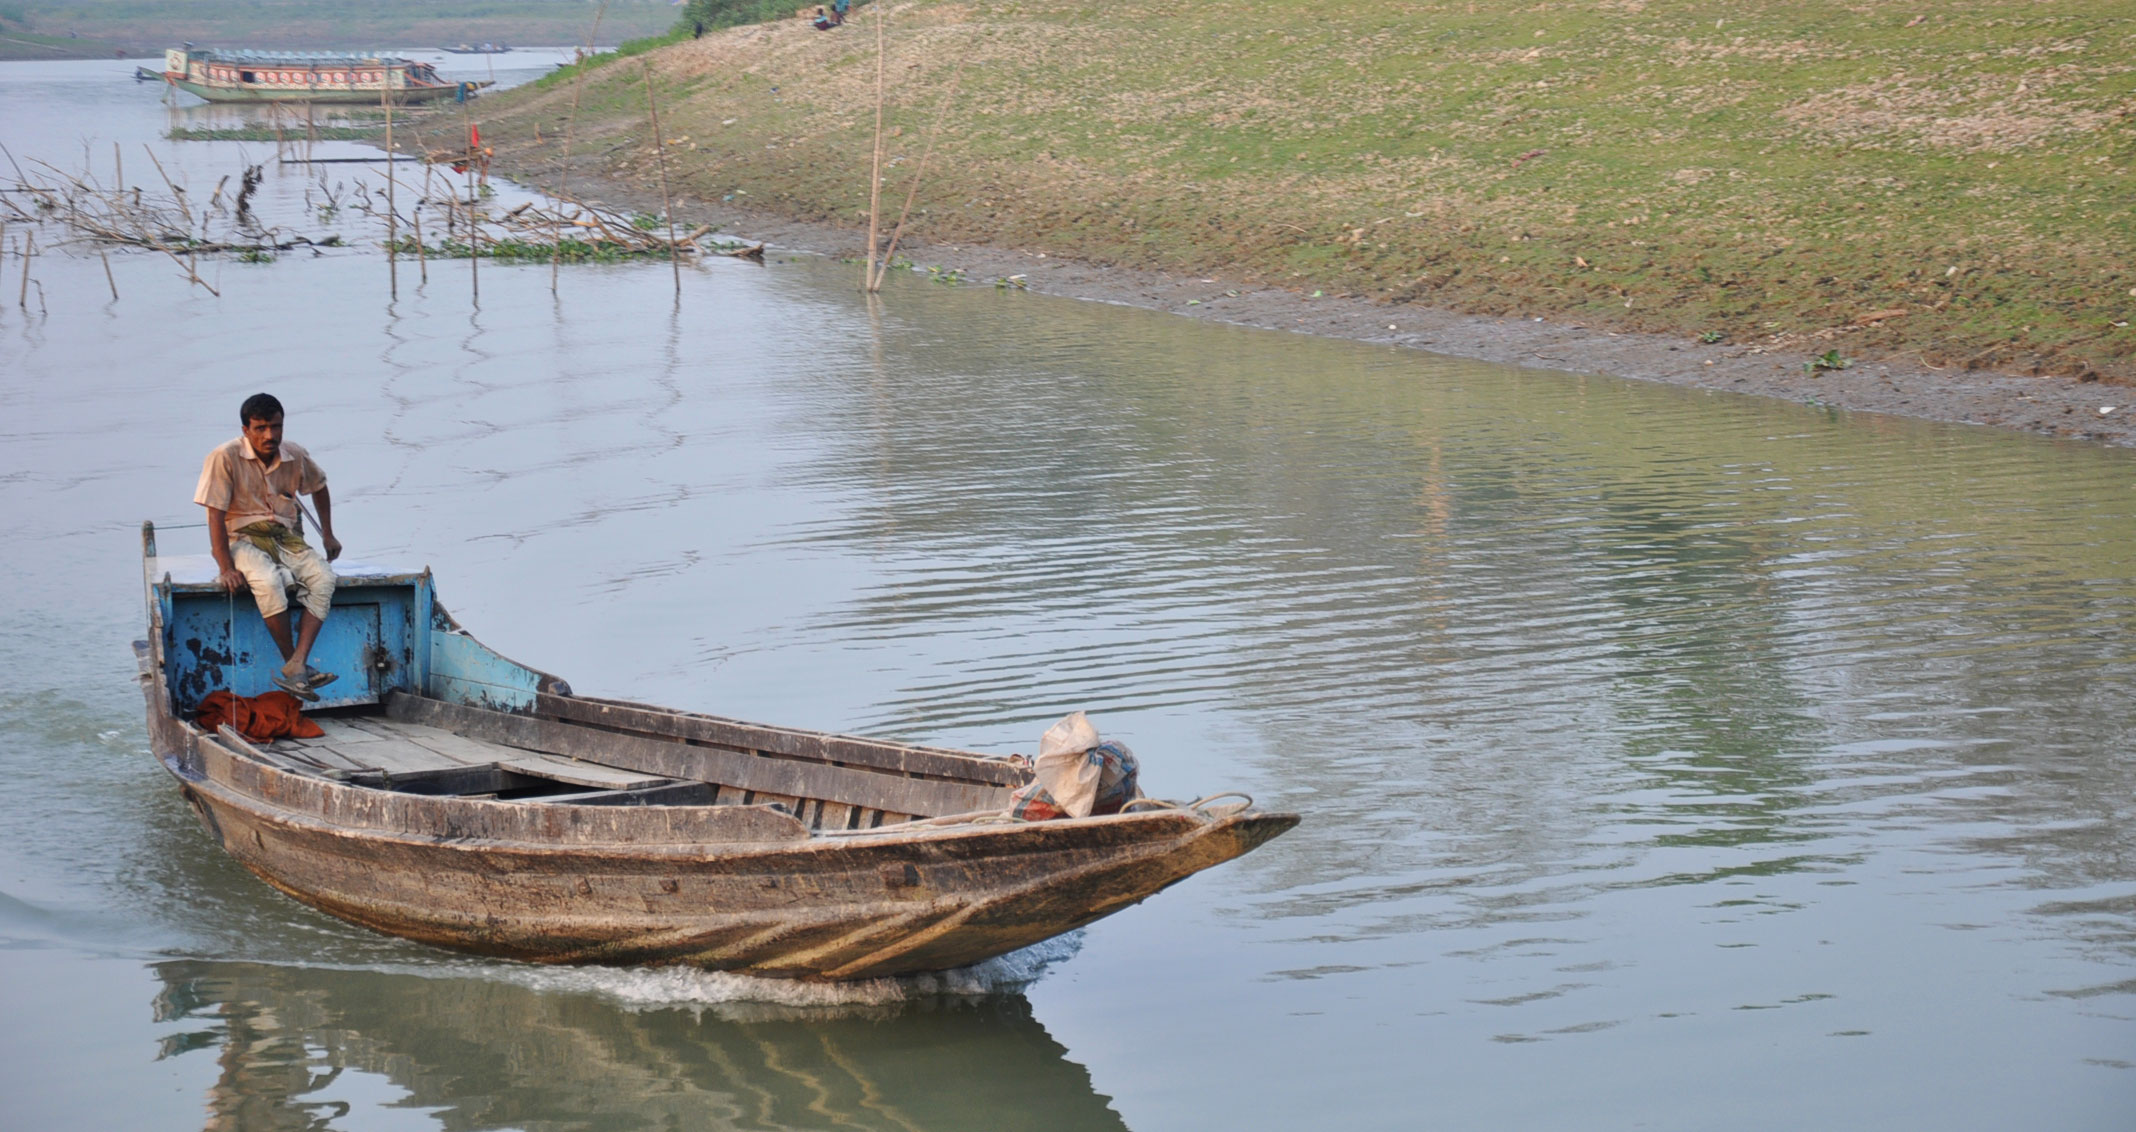 A man in a boat in flood-prone Bangladesh